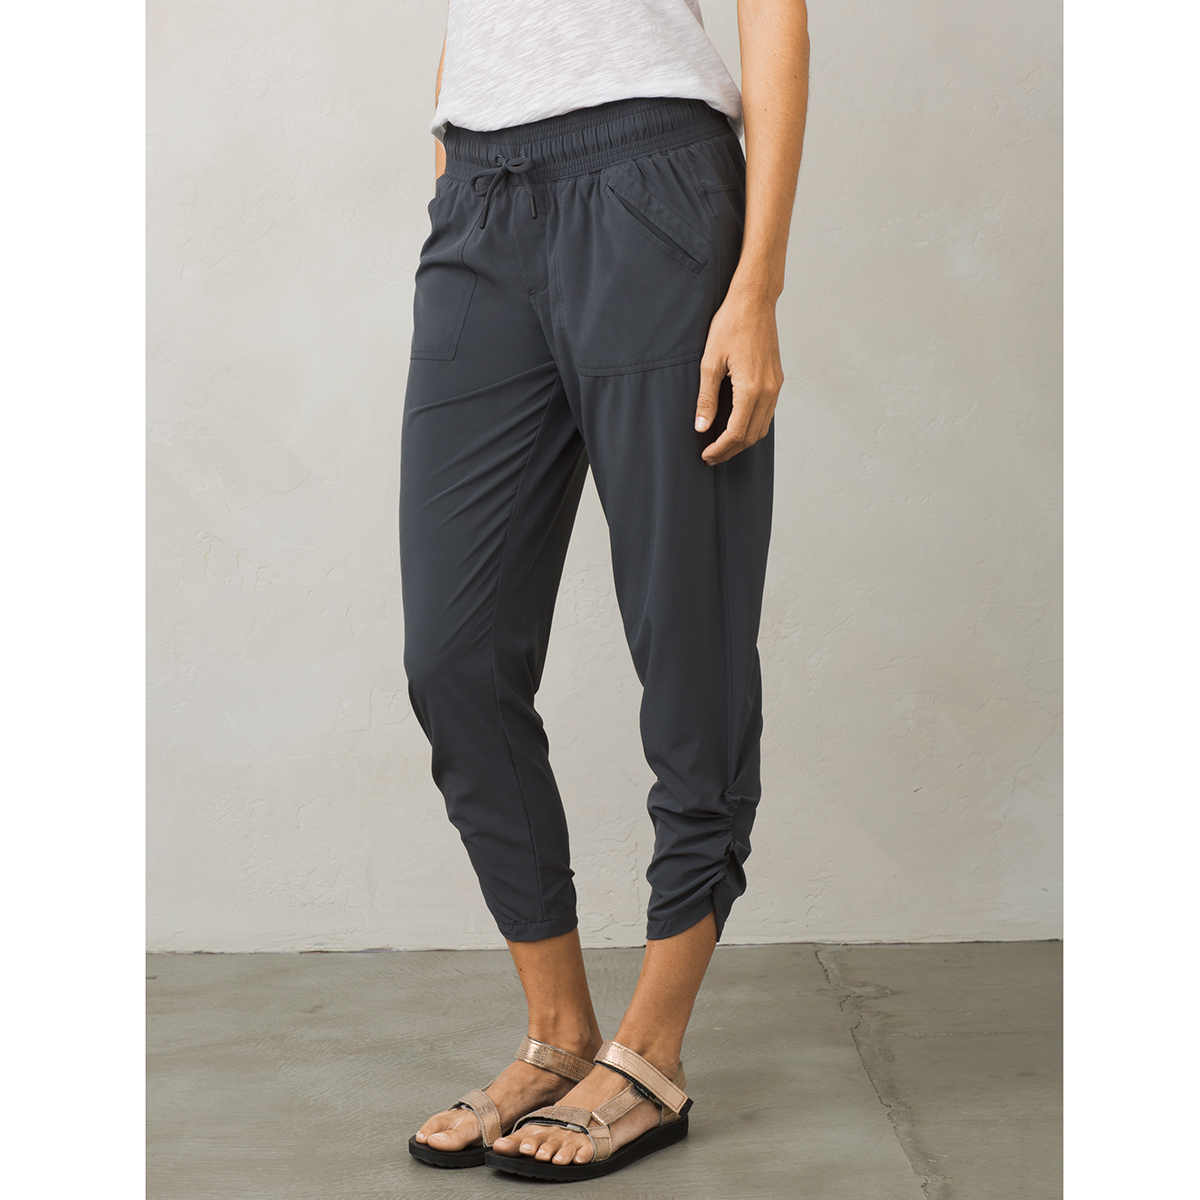 Capri pants women – Reliable companion – even at cooler temperatures